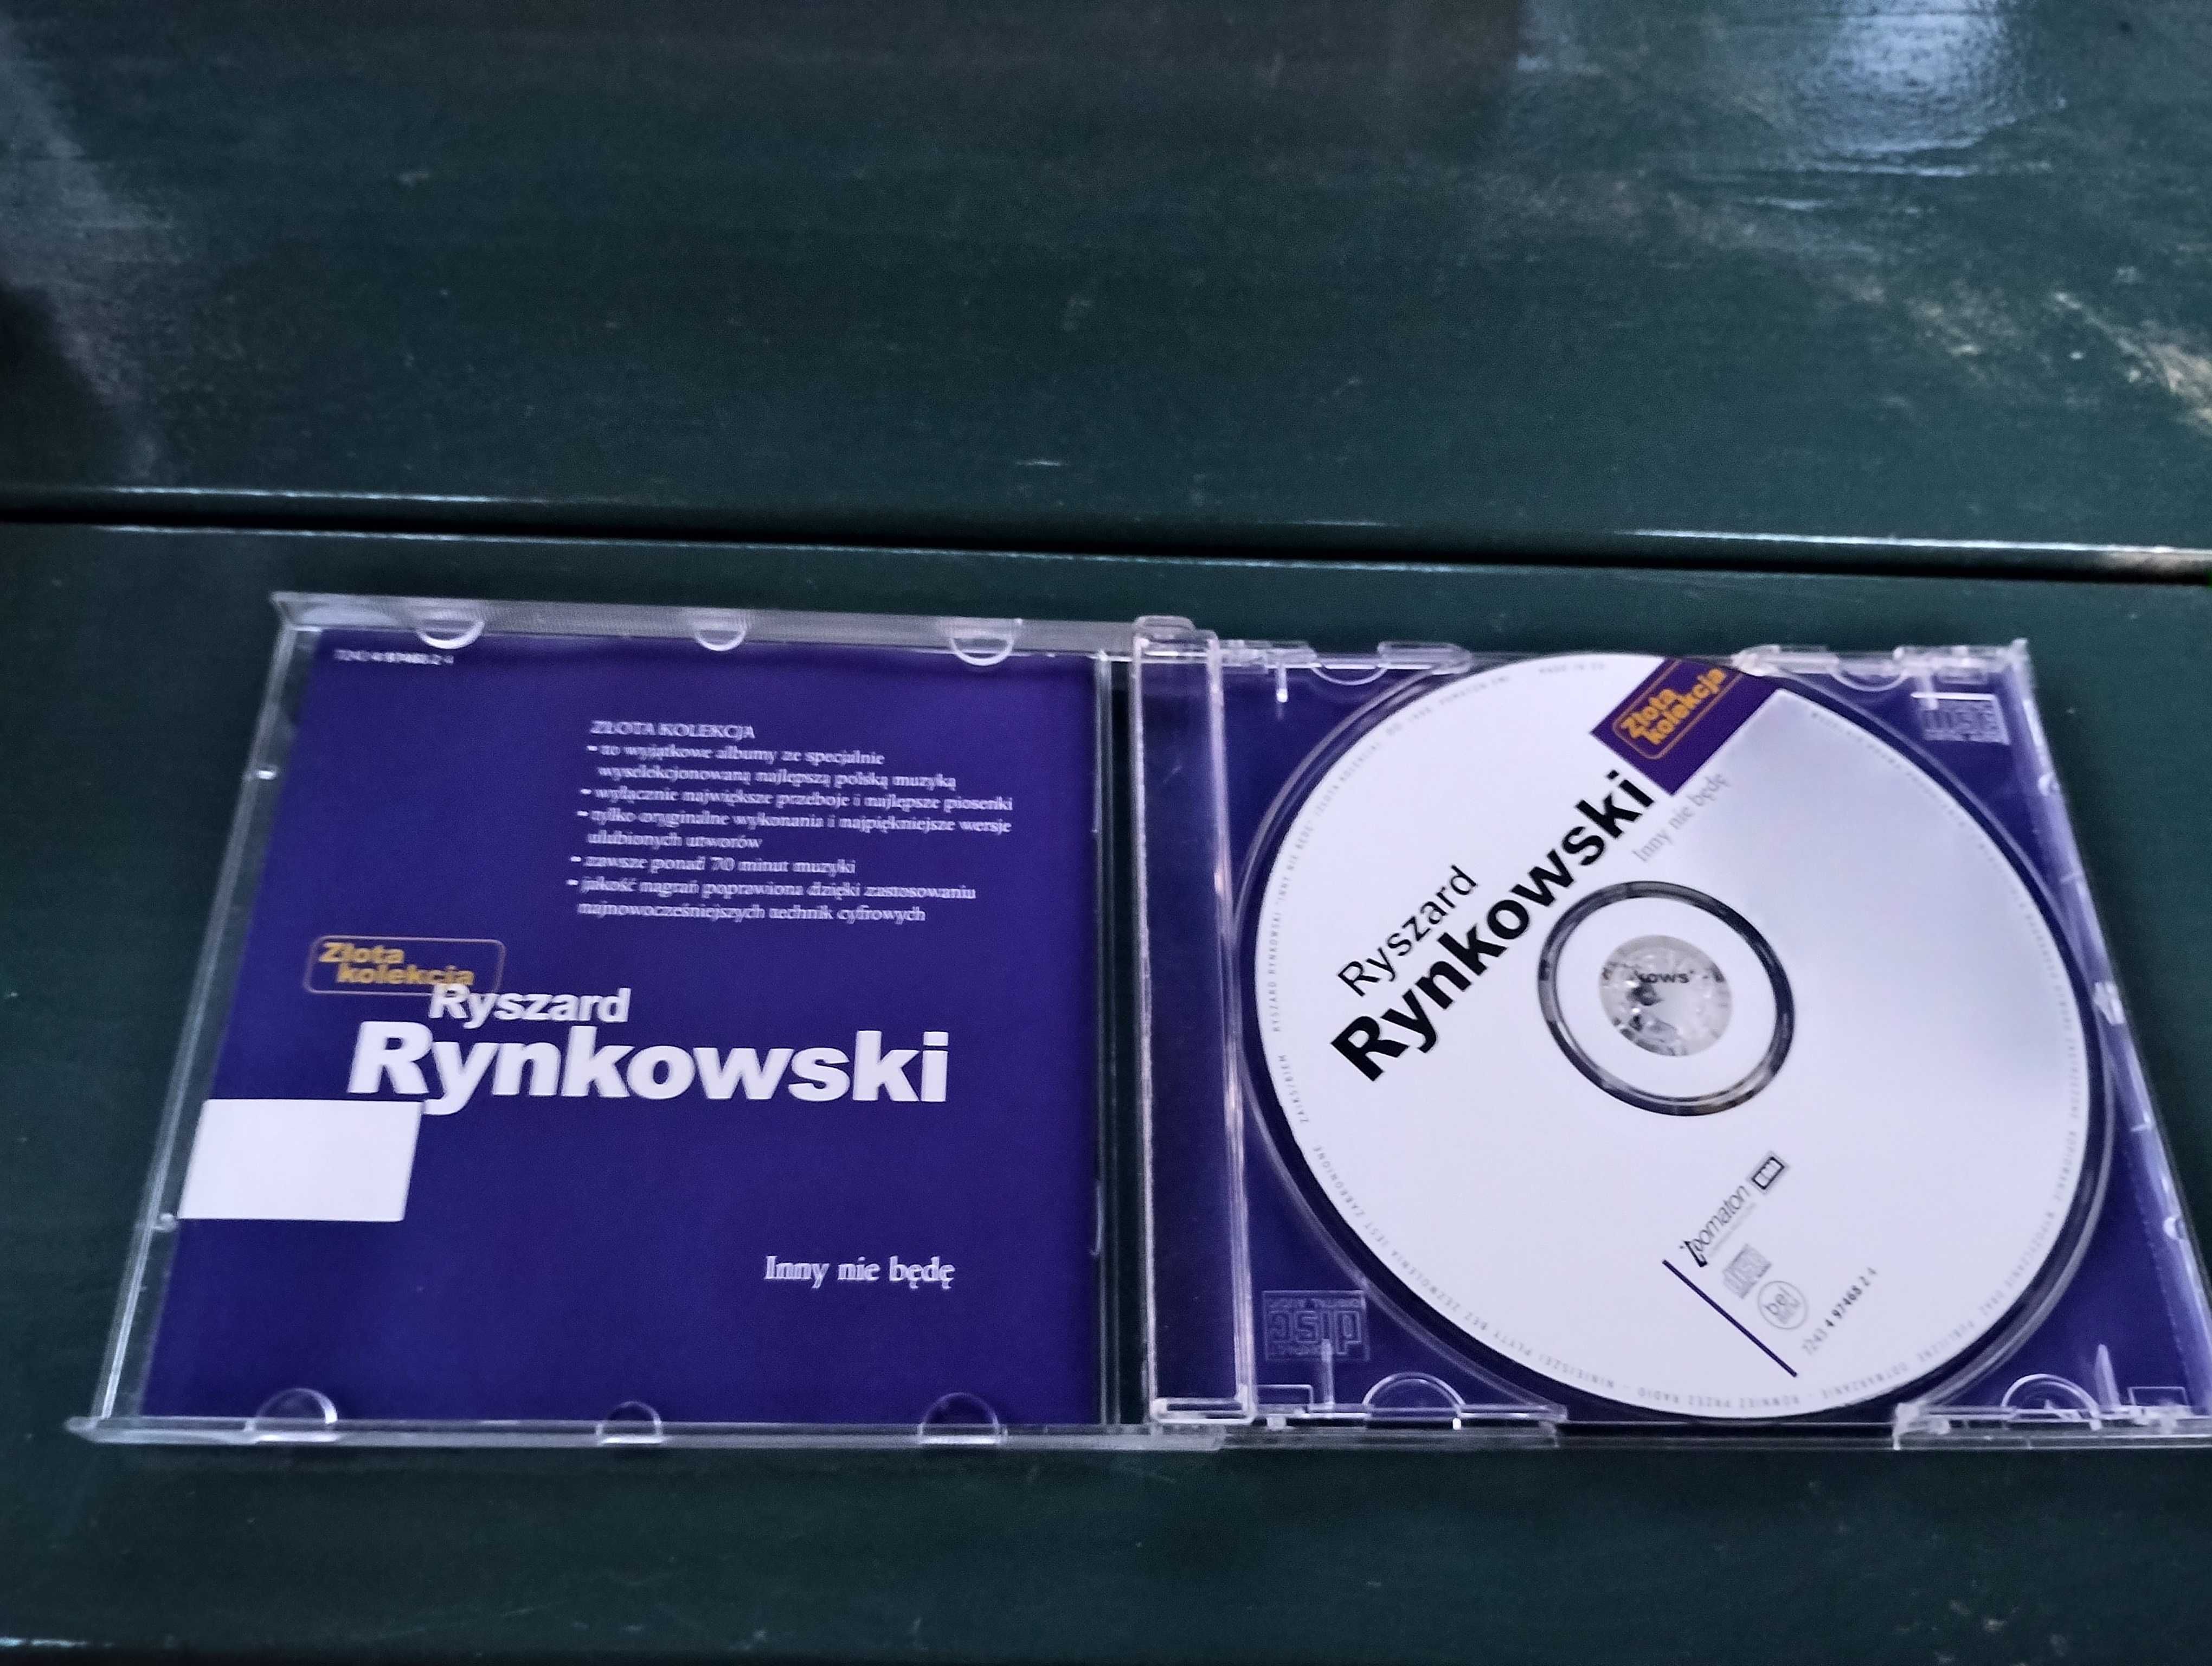 Ryszard Rynkowski Inny nie będę CD